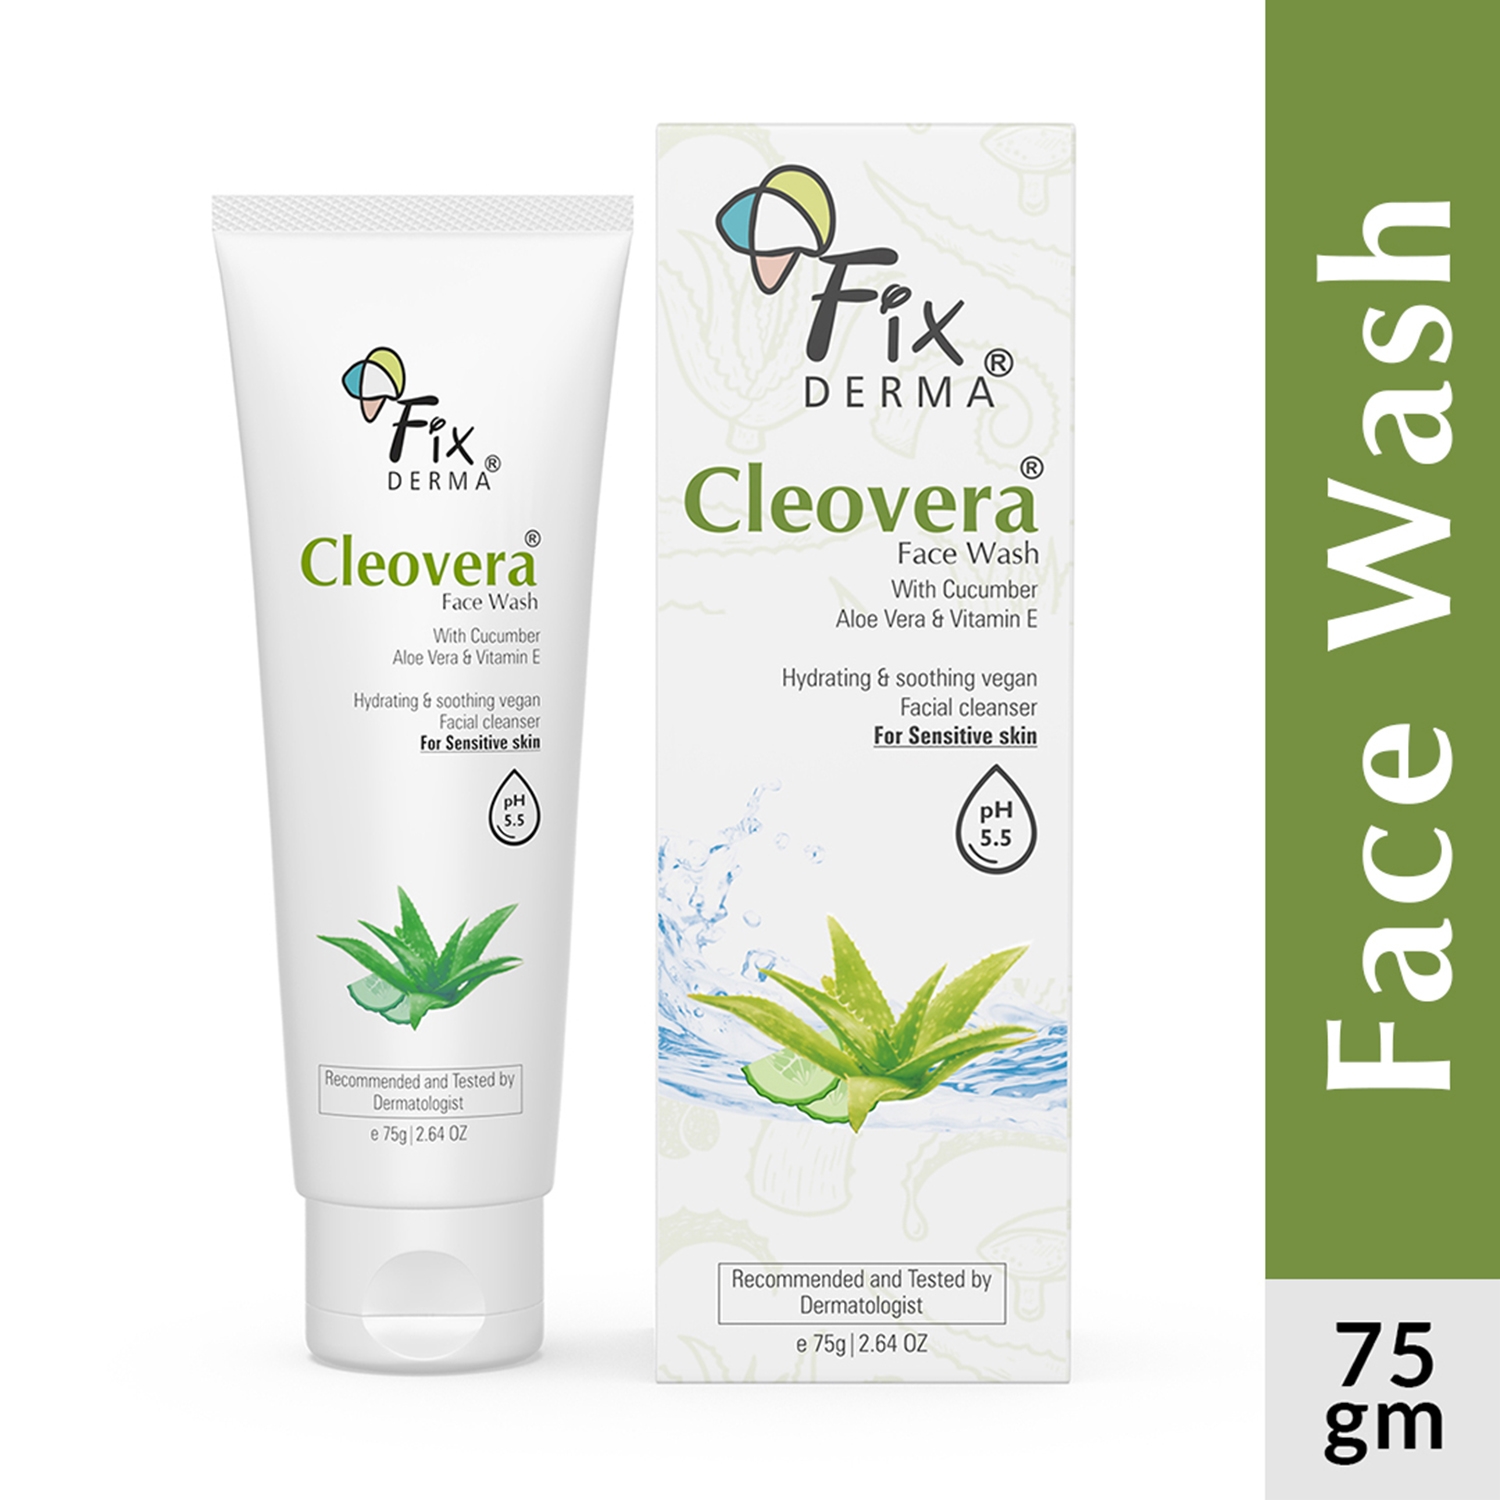 Fixderma | Fixderma Cleovera & Cucumber Facewash with Vitamin E (75g)